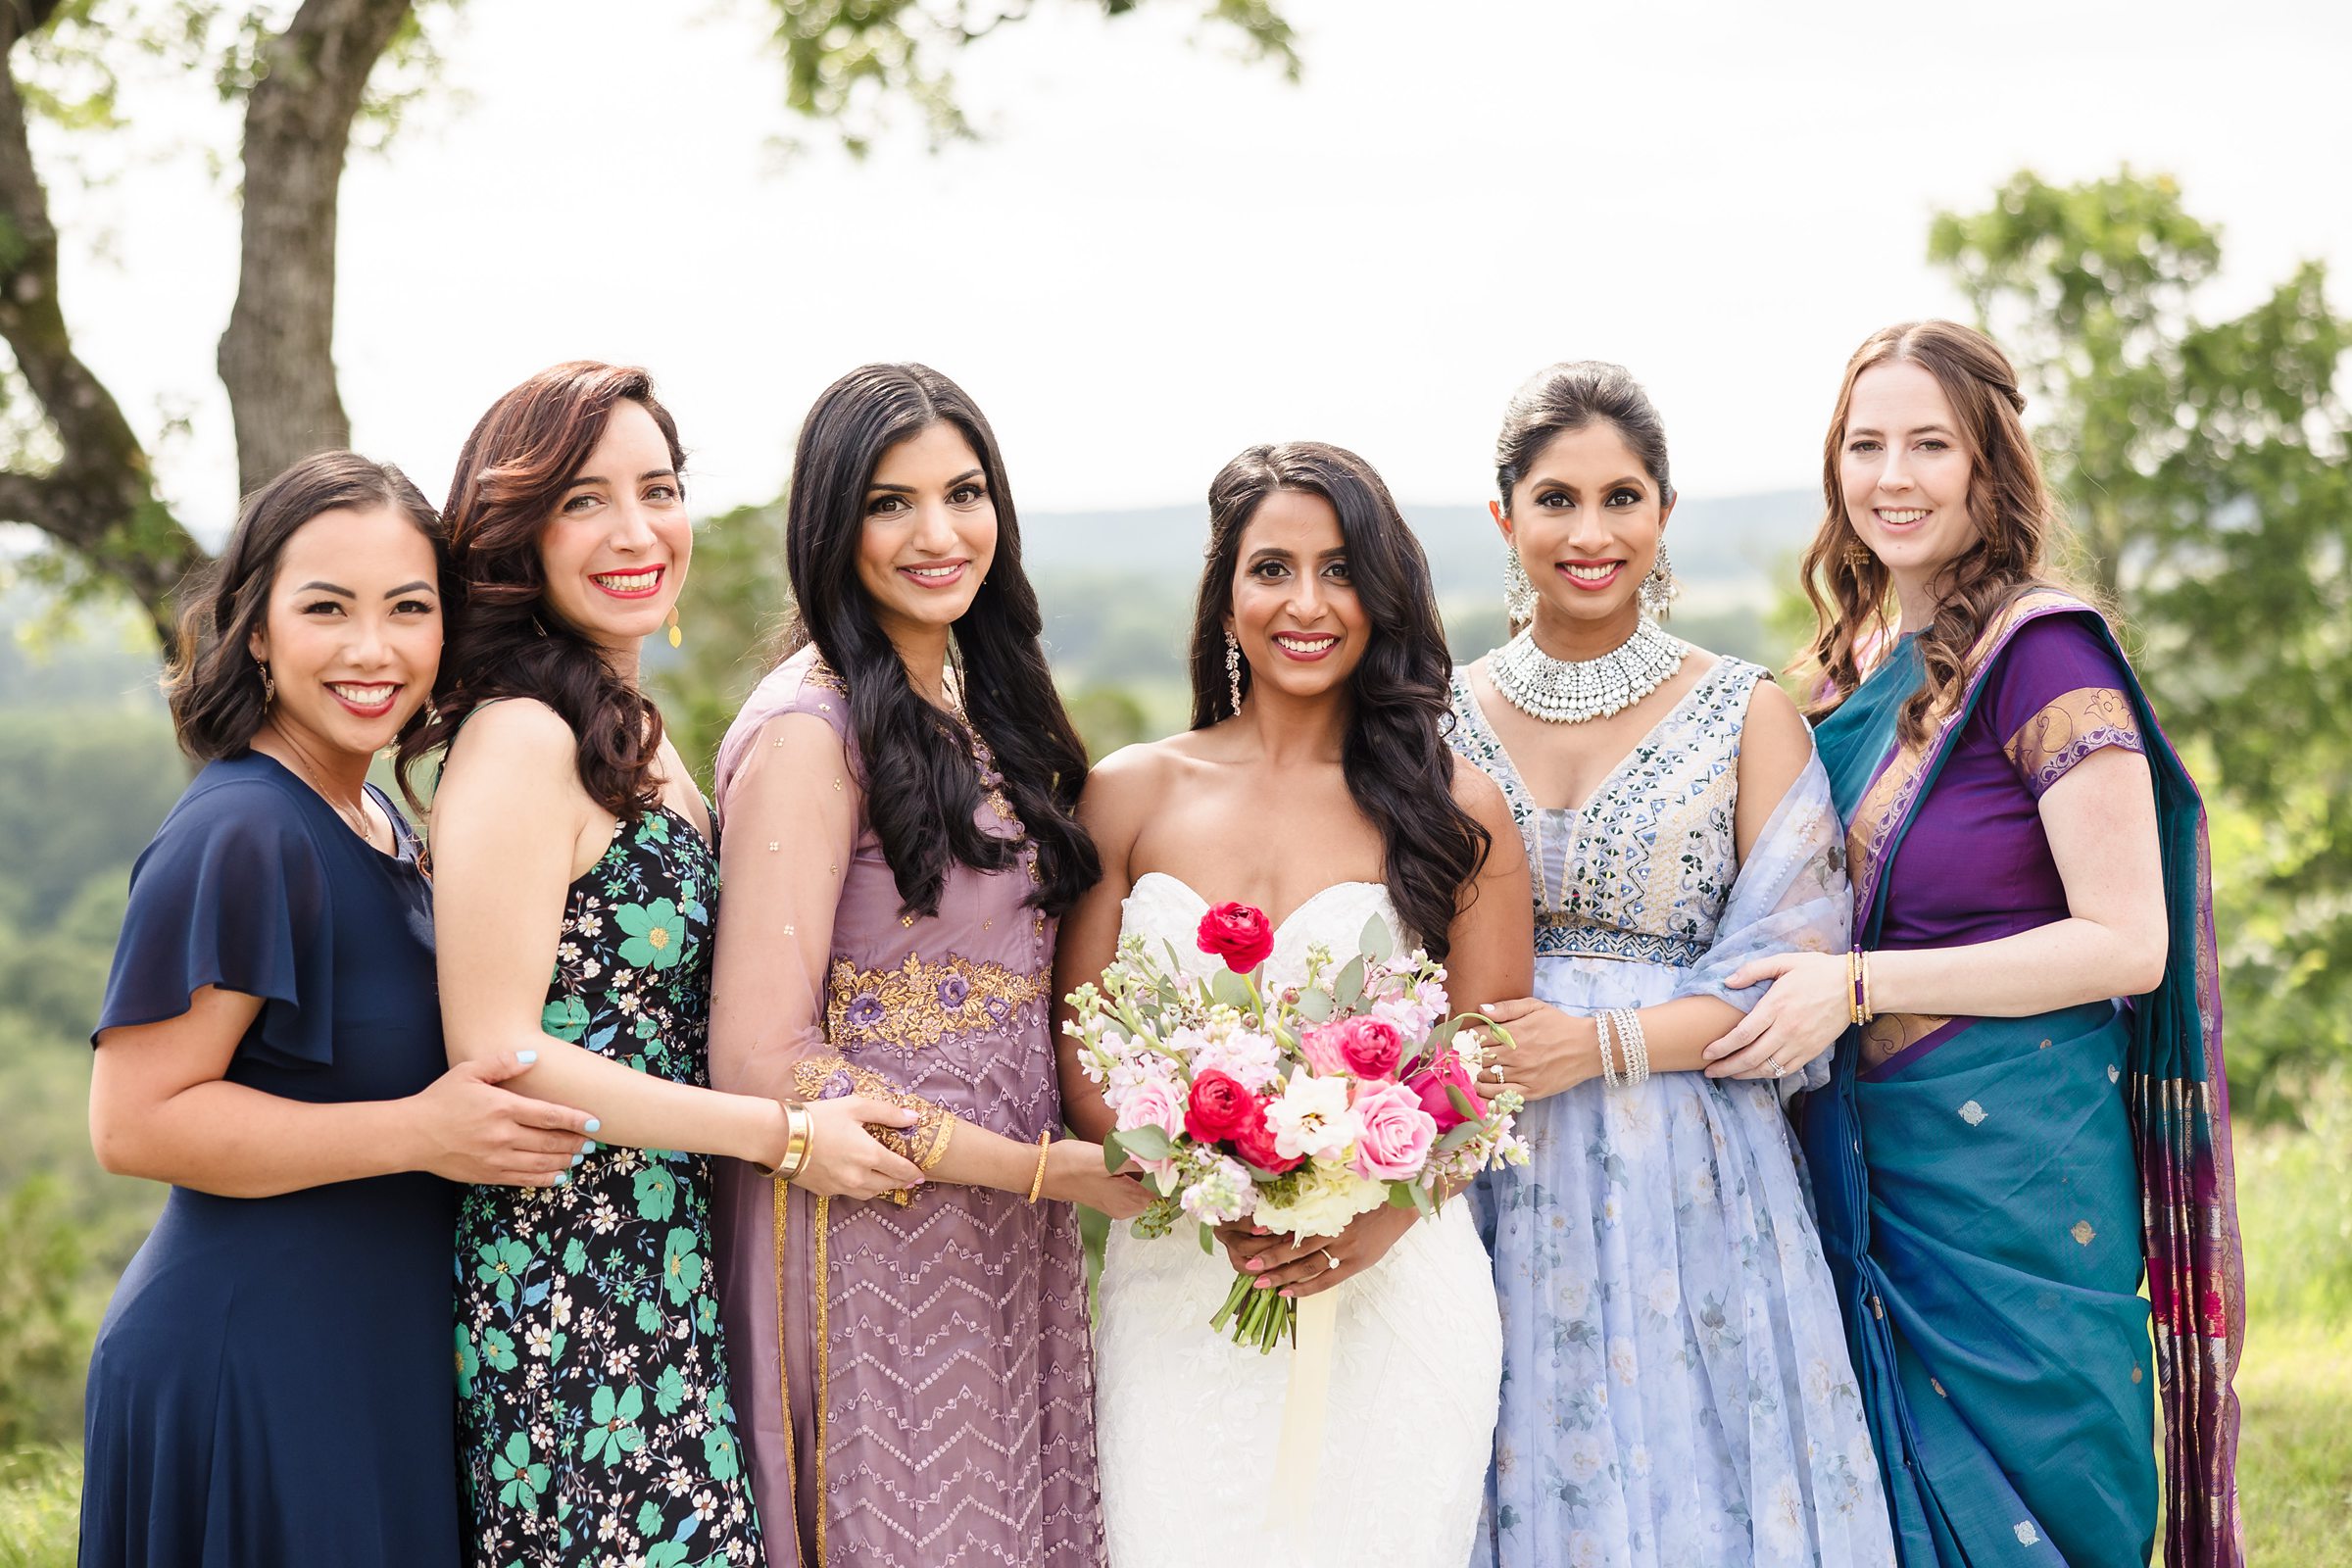 Bride and her bridesmaids during a wedding at Shiraz Garden in Bastrop, Texas.